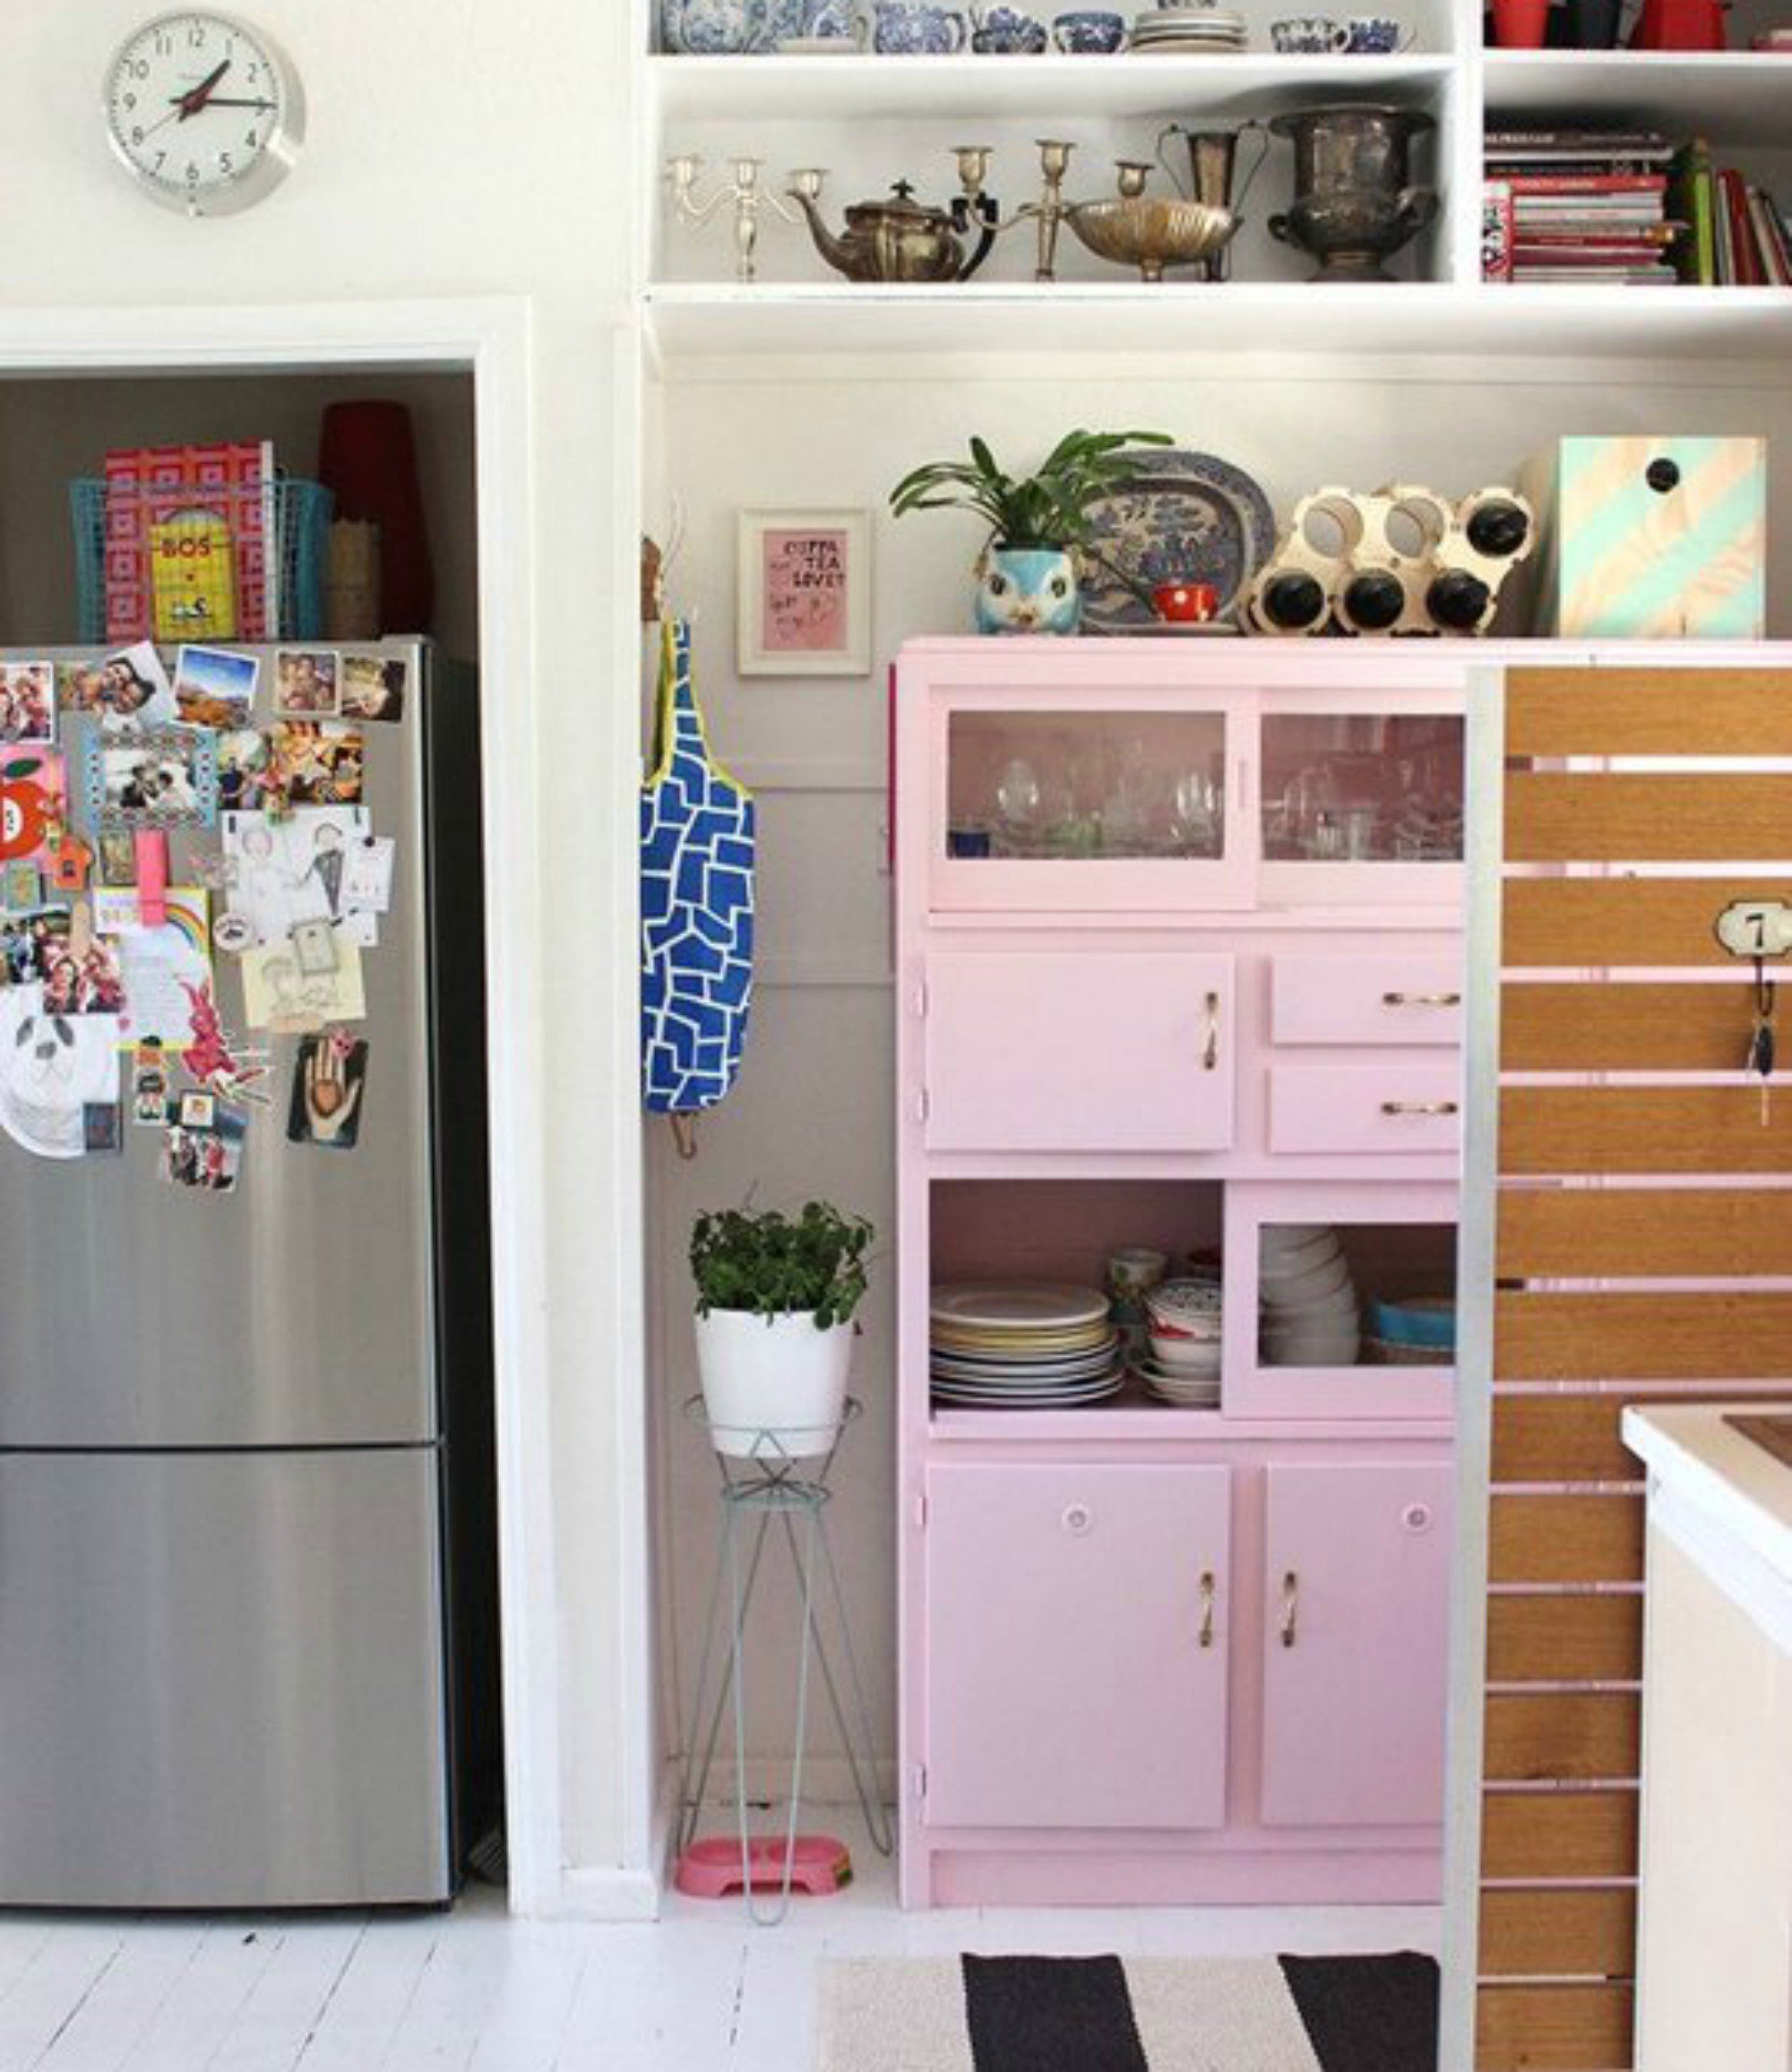 Αν σας αρέσει το ροζ χρώμα τότε βάλτε το στην κουζίνα σας. Με την κατάλληλη διακόσμηση οποιοδήποτε χρώμα μπορεί να ταιριάξει σε μια κουζίνα.